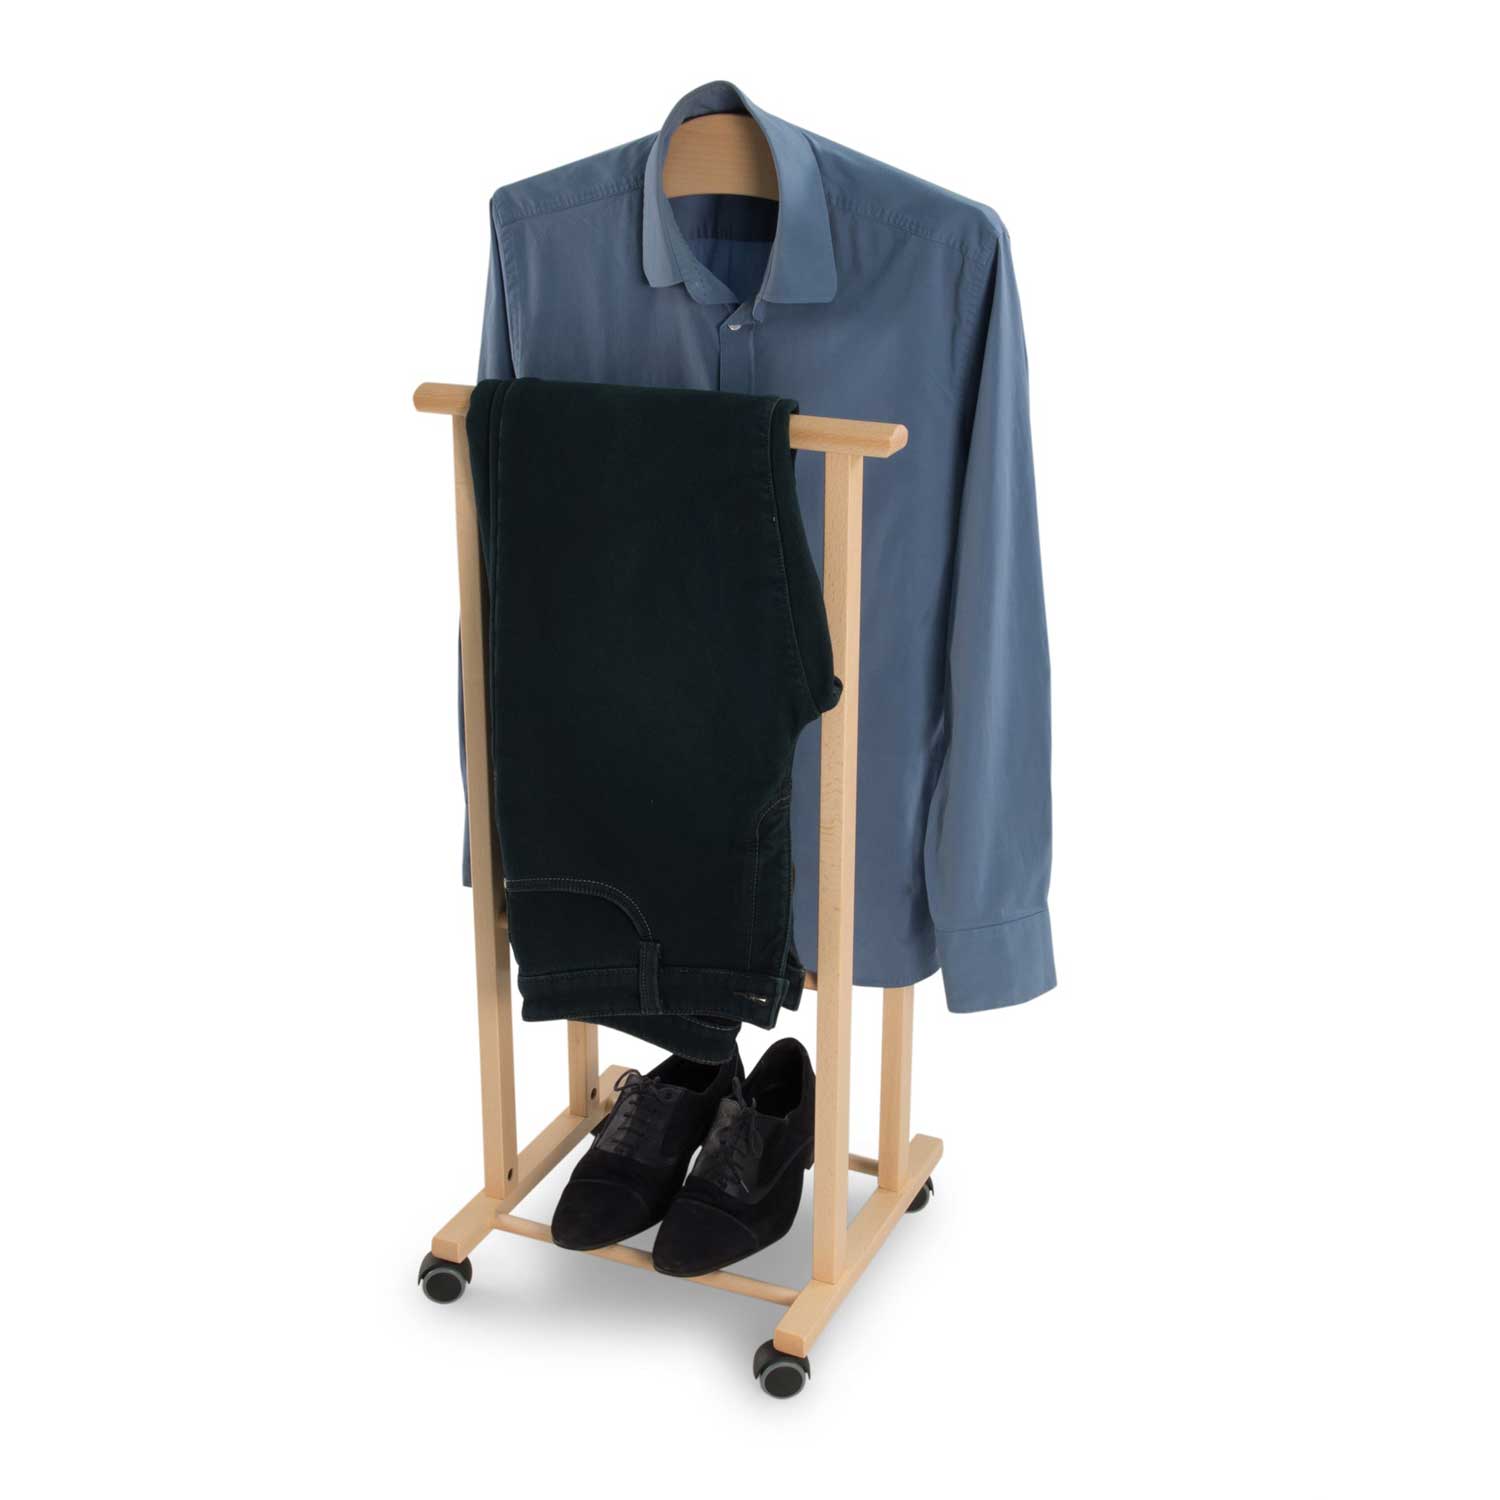 Valet de nuit ATRI, Composé d'un cintre et d'un porte-pantalon, pieds en caoutchouc à la base. - couleur naturellele